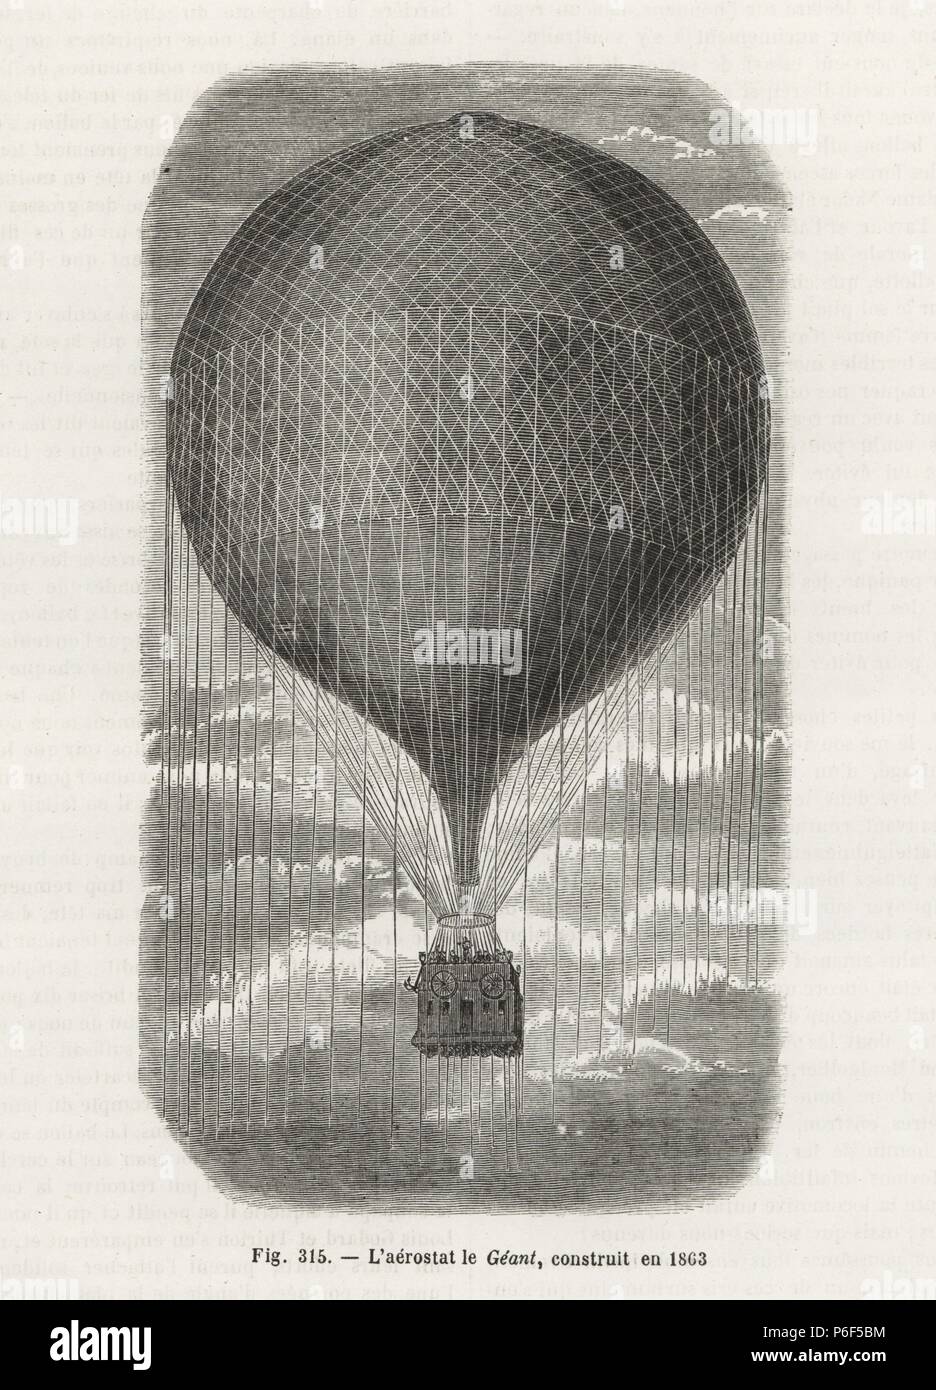 Le géant le Géant (ballon), construit en 1863 pour Felix Nadar. La gravure  sur bois de Louis Figuier's 'Les merveilles de la science : Des aérostats ( merveilles de la science : les